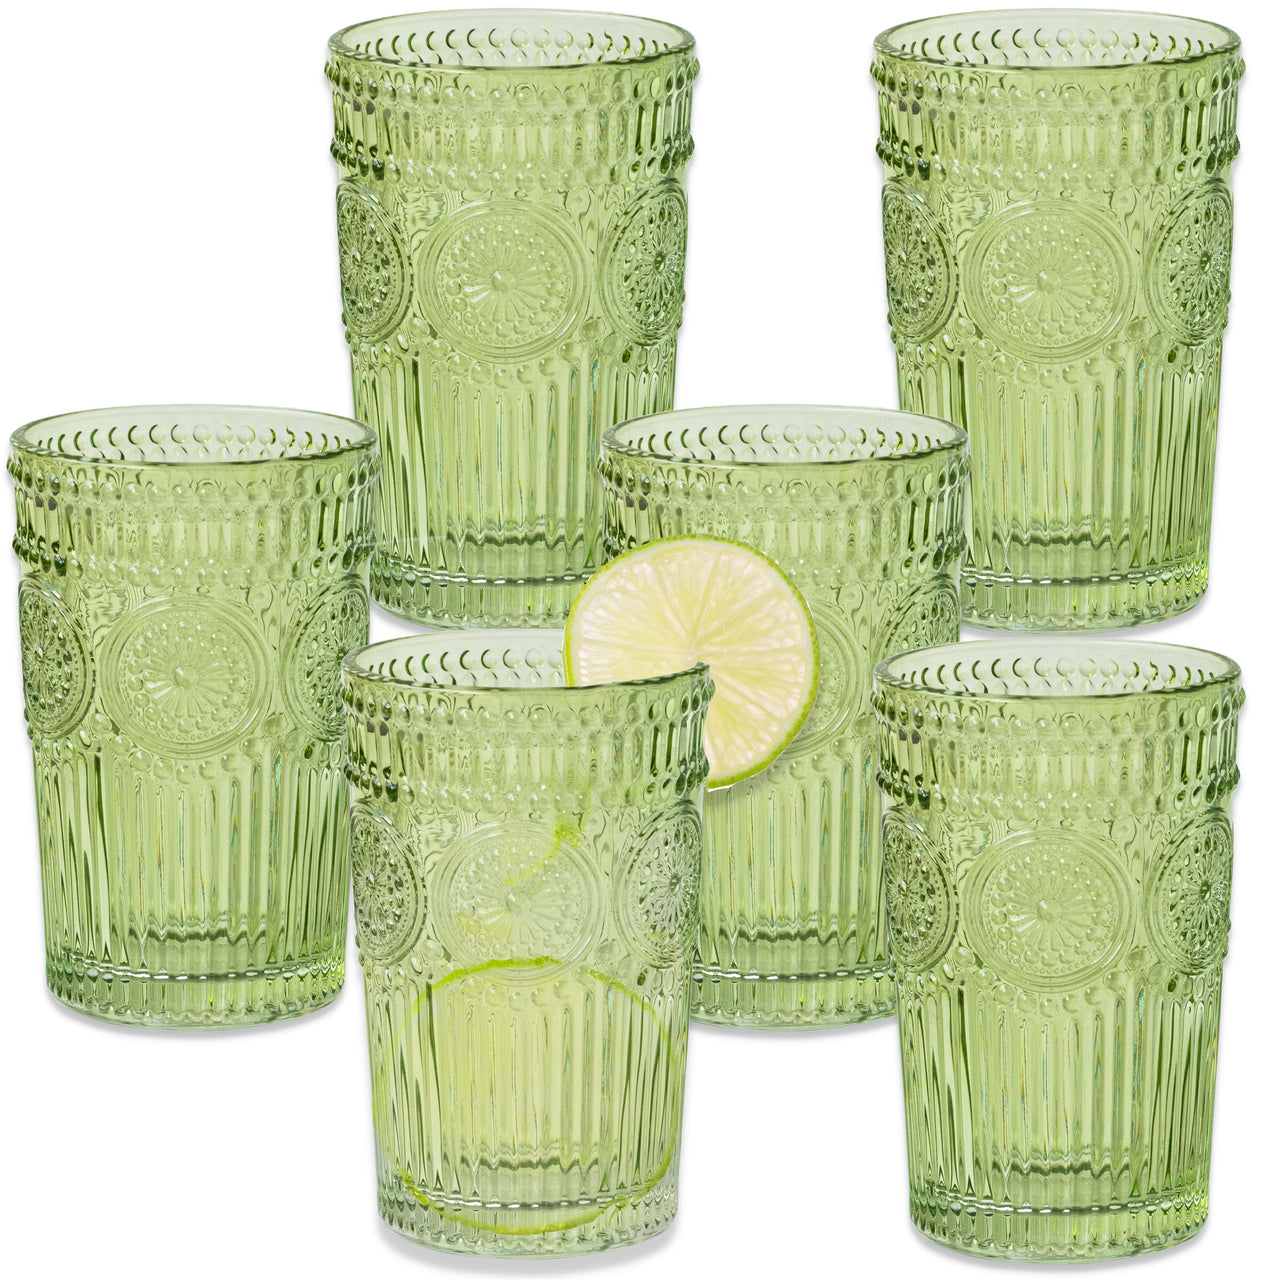 13 oz. Vintage Textured Sage Green Glass (Set of 6) Alternate Image 8, Kate Aspen | Drinking Glasses